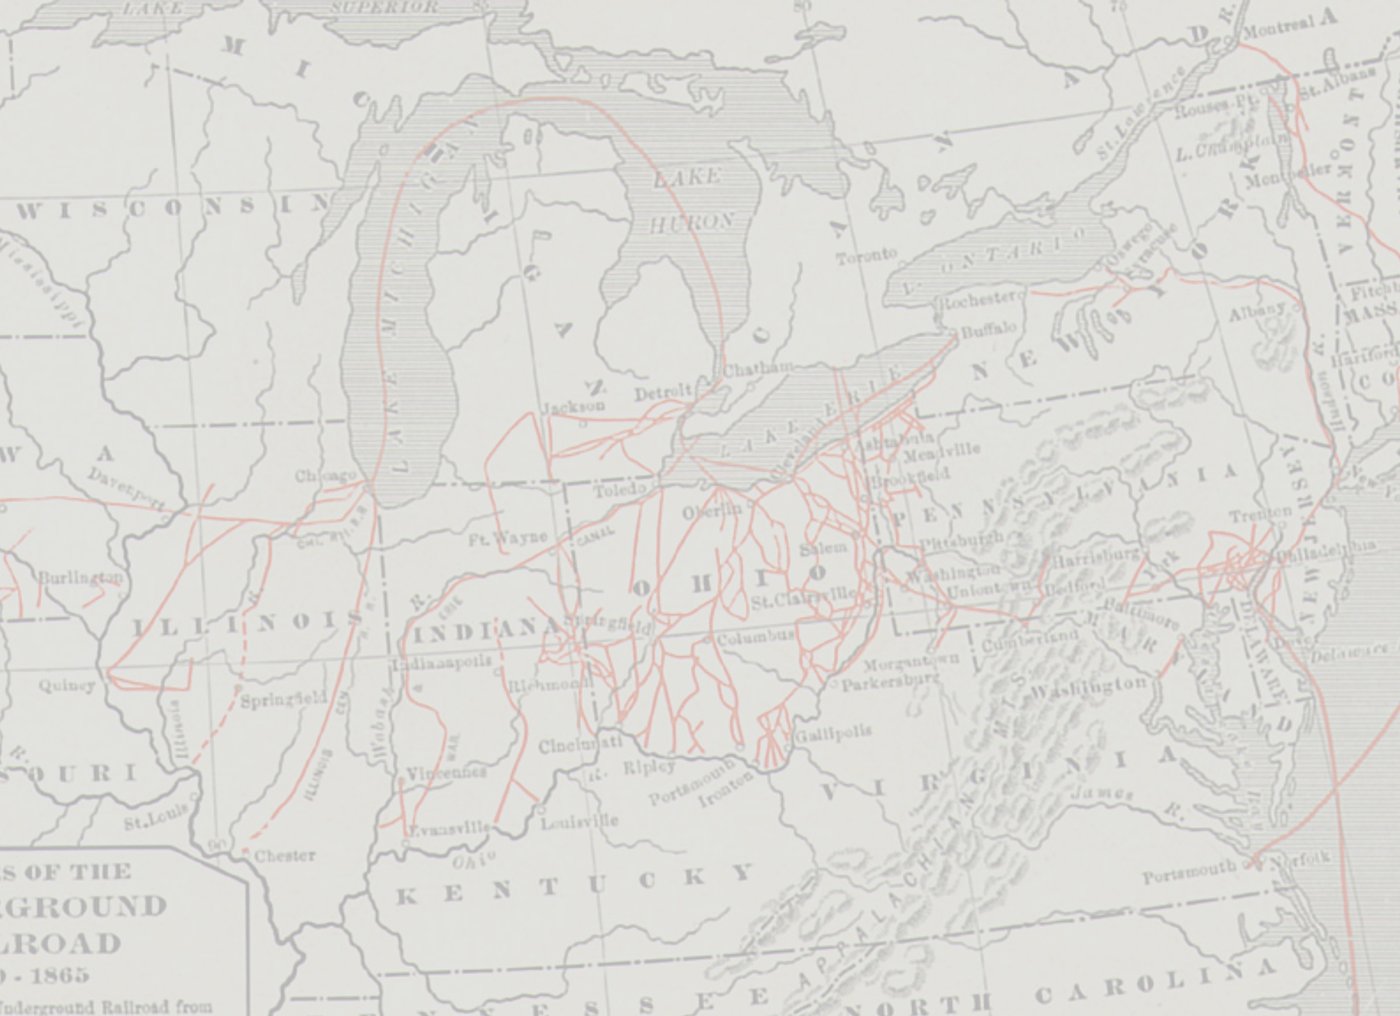 Ausschnitt eines Plans mit Routen in roter eingezeichnet